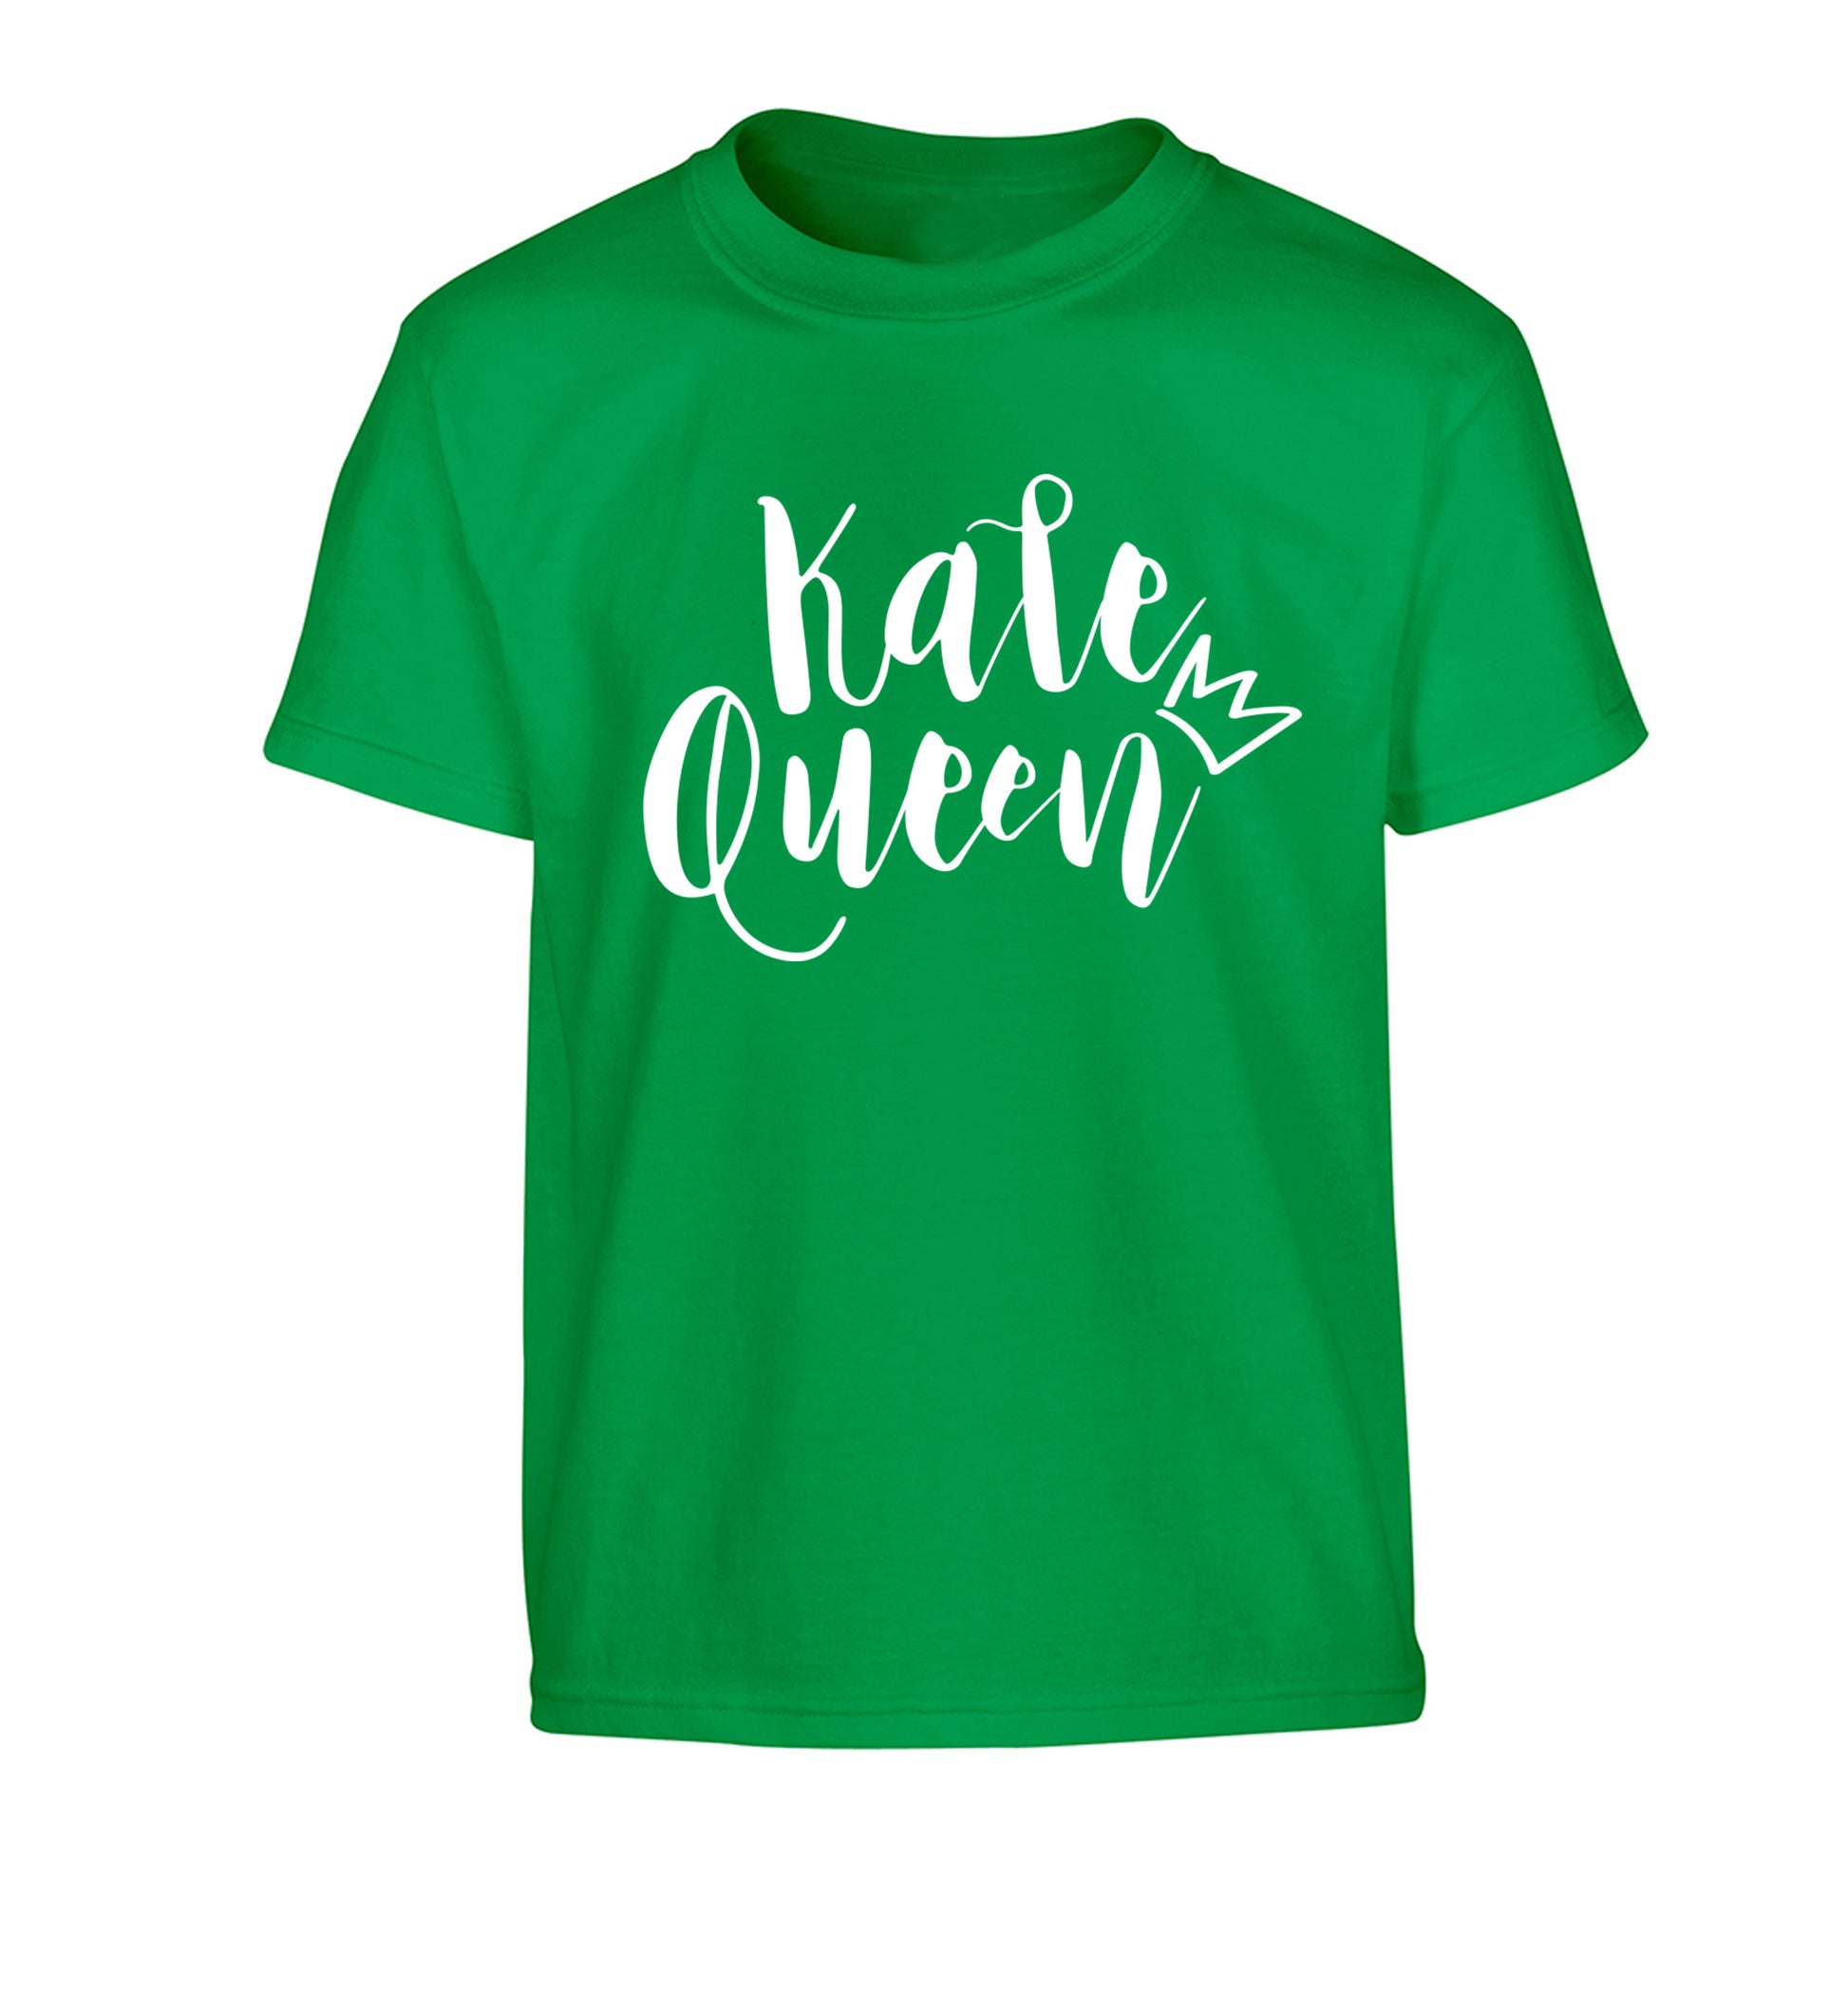 Kale Queen Children's green Tshirt 12-14 Years